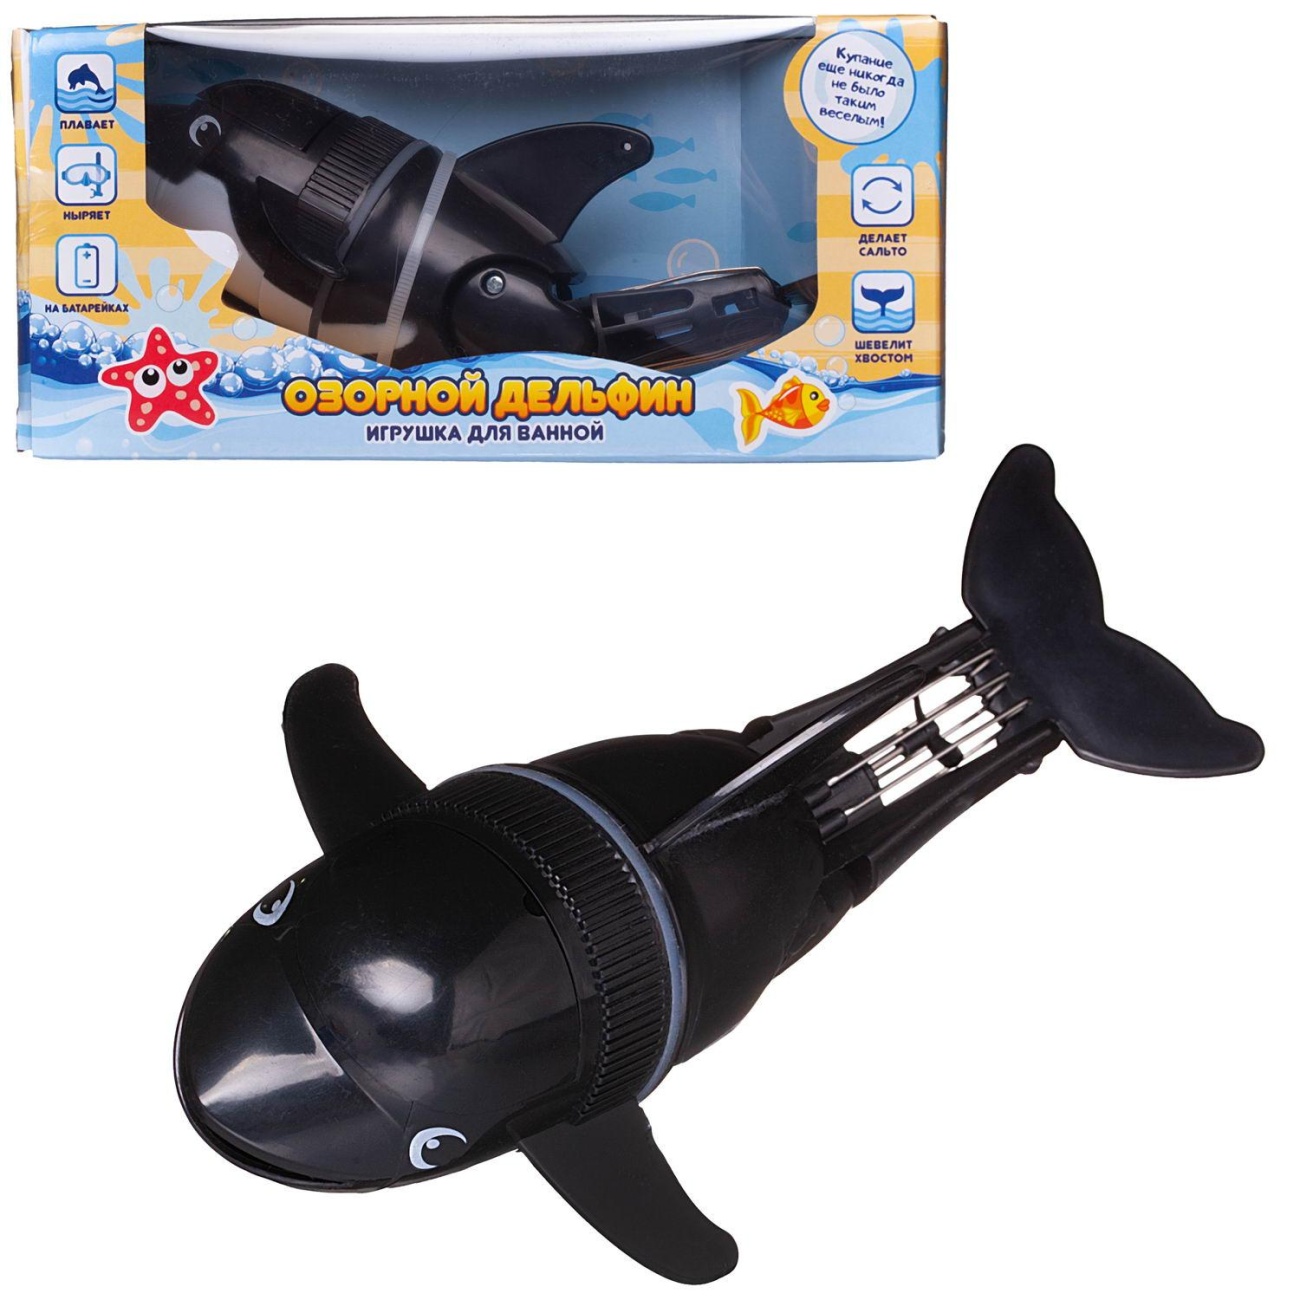 Игрушка д/ванной Abtoys Веселое купание Озорной дельфин черный PT-01755/черный